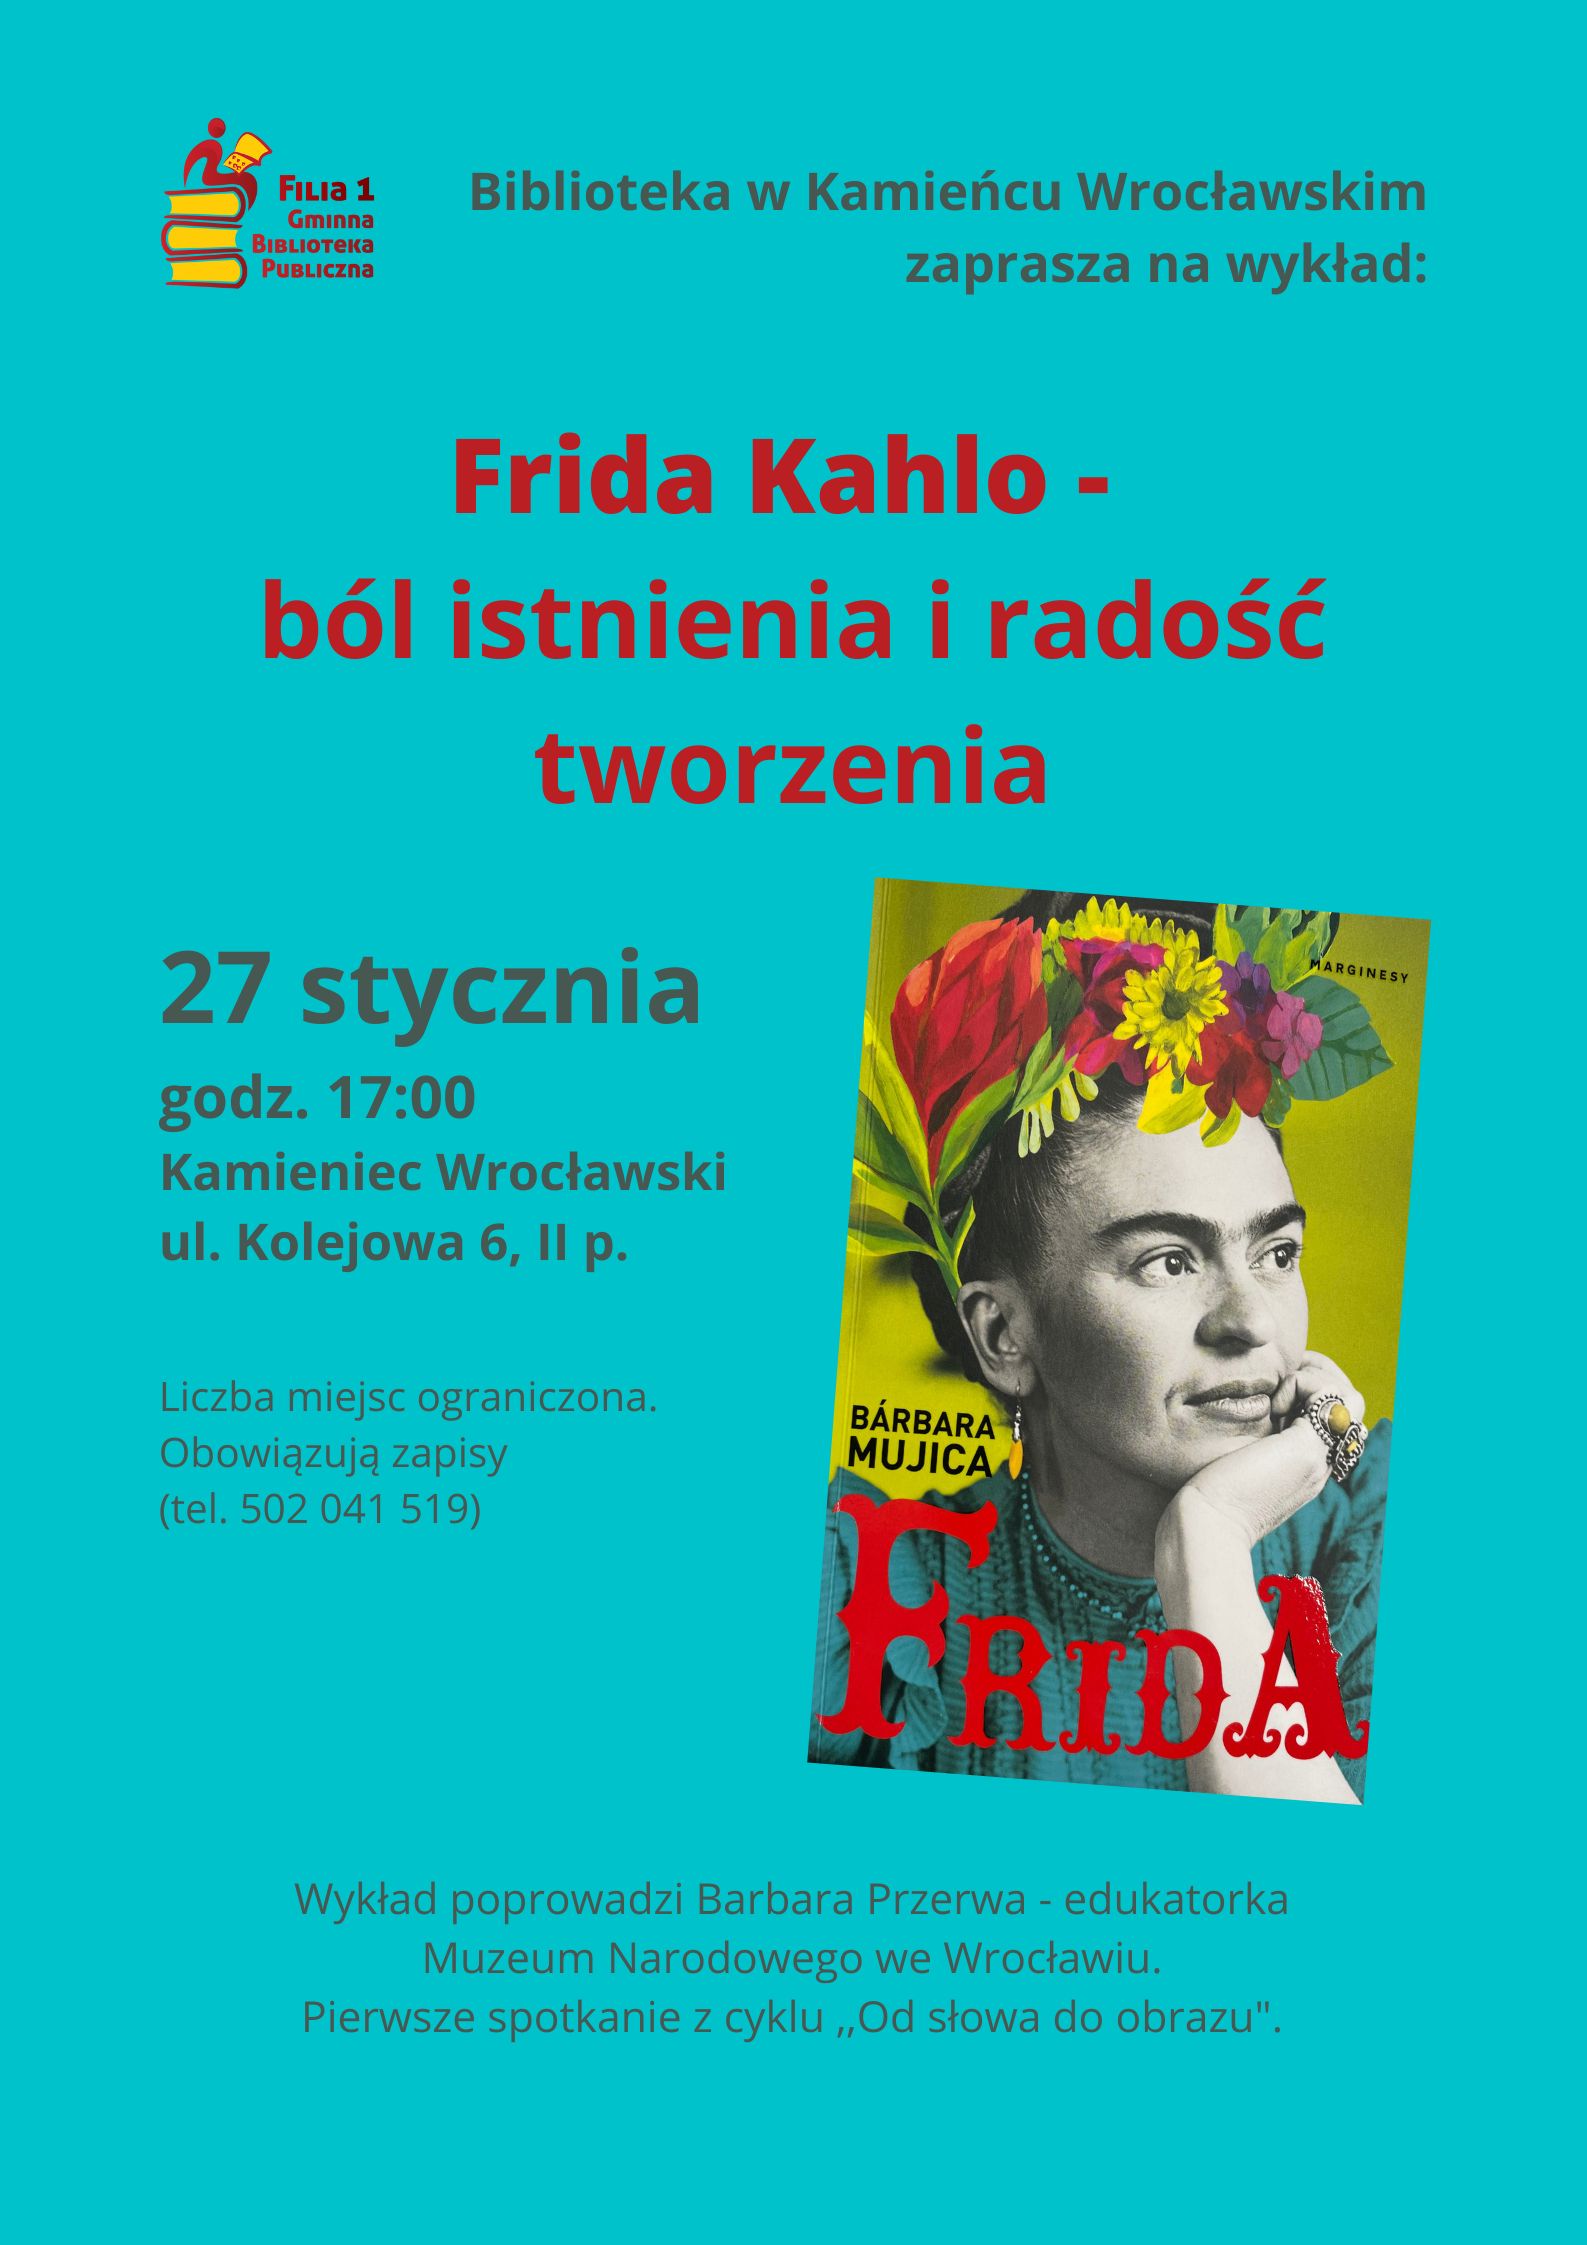 Frida Kahlo - ból istnienia i radość tworzenia